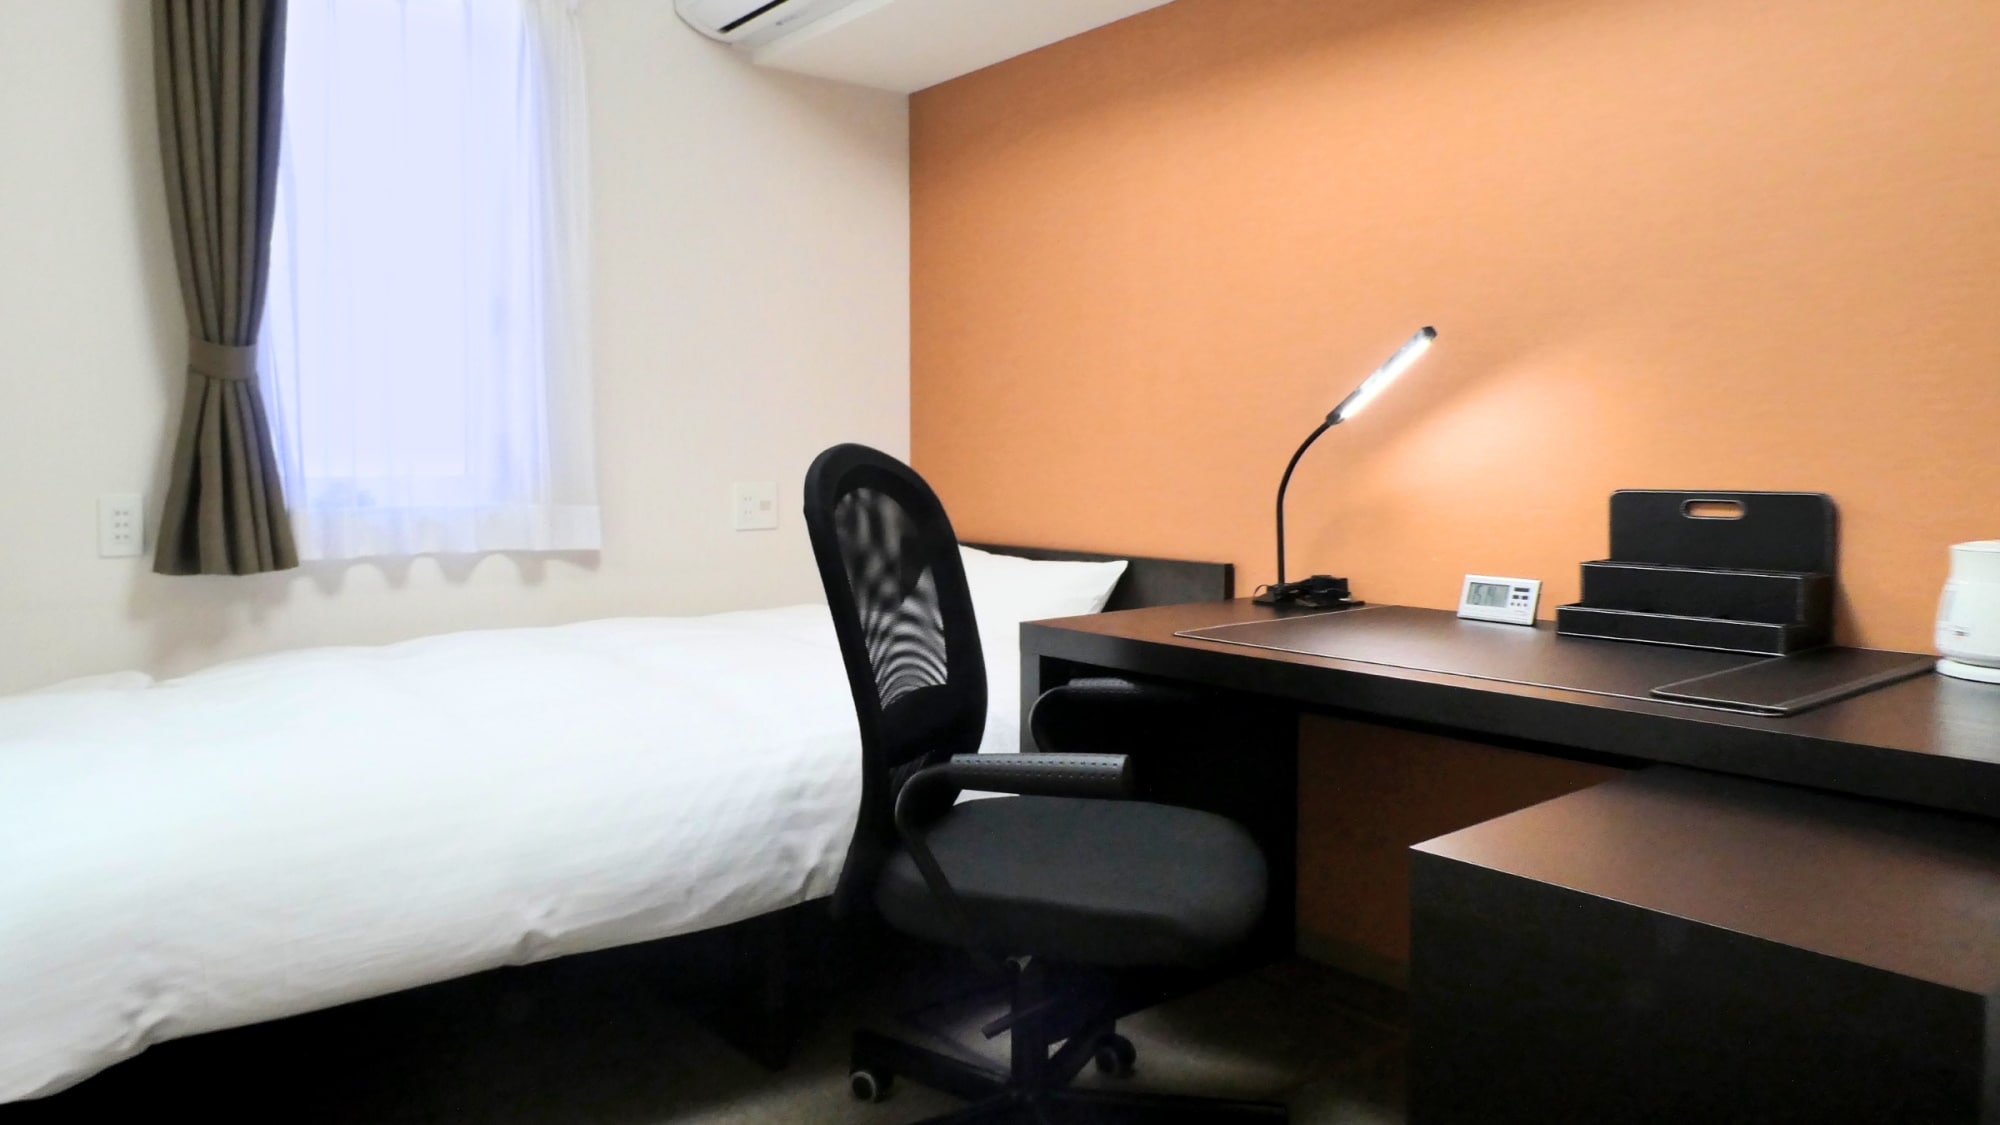 ห้องธุรกิจเตียงเดี่ยวพร้อมเครื่องปรับอากาศส่วนตัว อินเทอร์เน็ตไร้สาย (Wi-Fi) น้ำอุ่นล้างที่นั่งชักโครก